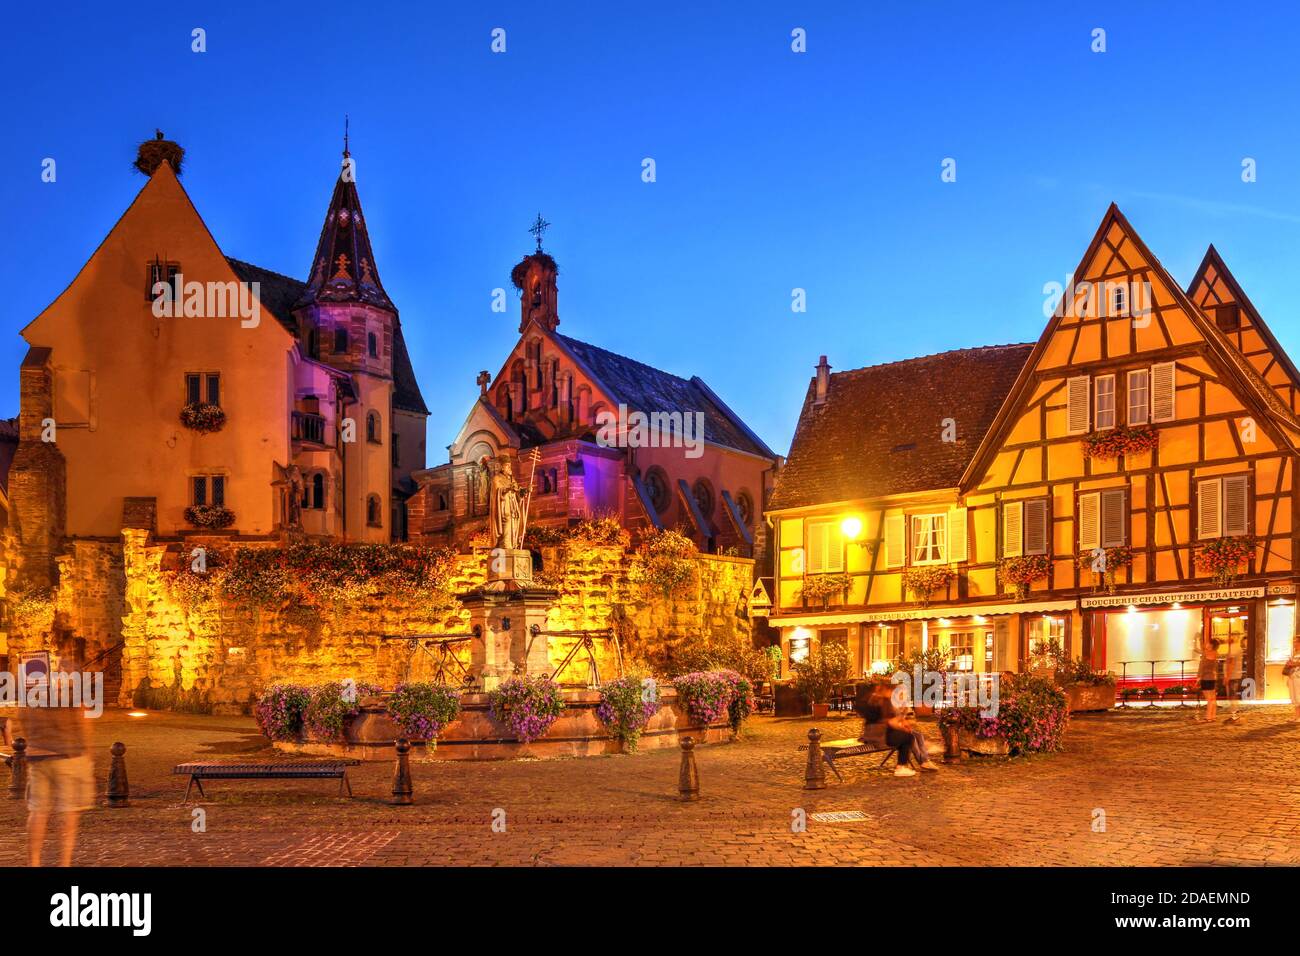 Scena notturna in Piazza Staint Leon, Eguisheim, un villaggio medievale meravigliosamente conservato nella regione vinicola francese dell'Alsazia, con Chateau Saint S Foto Stock